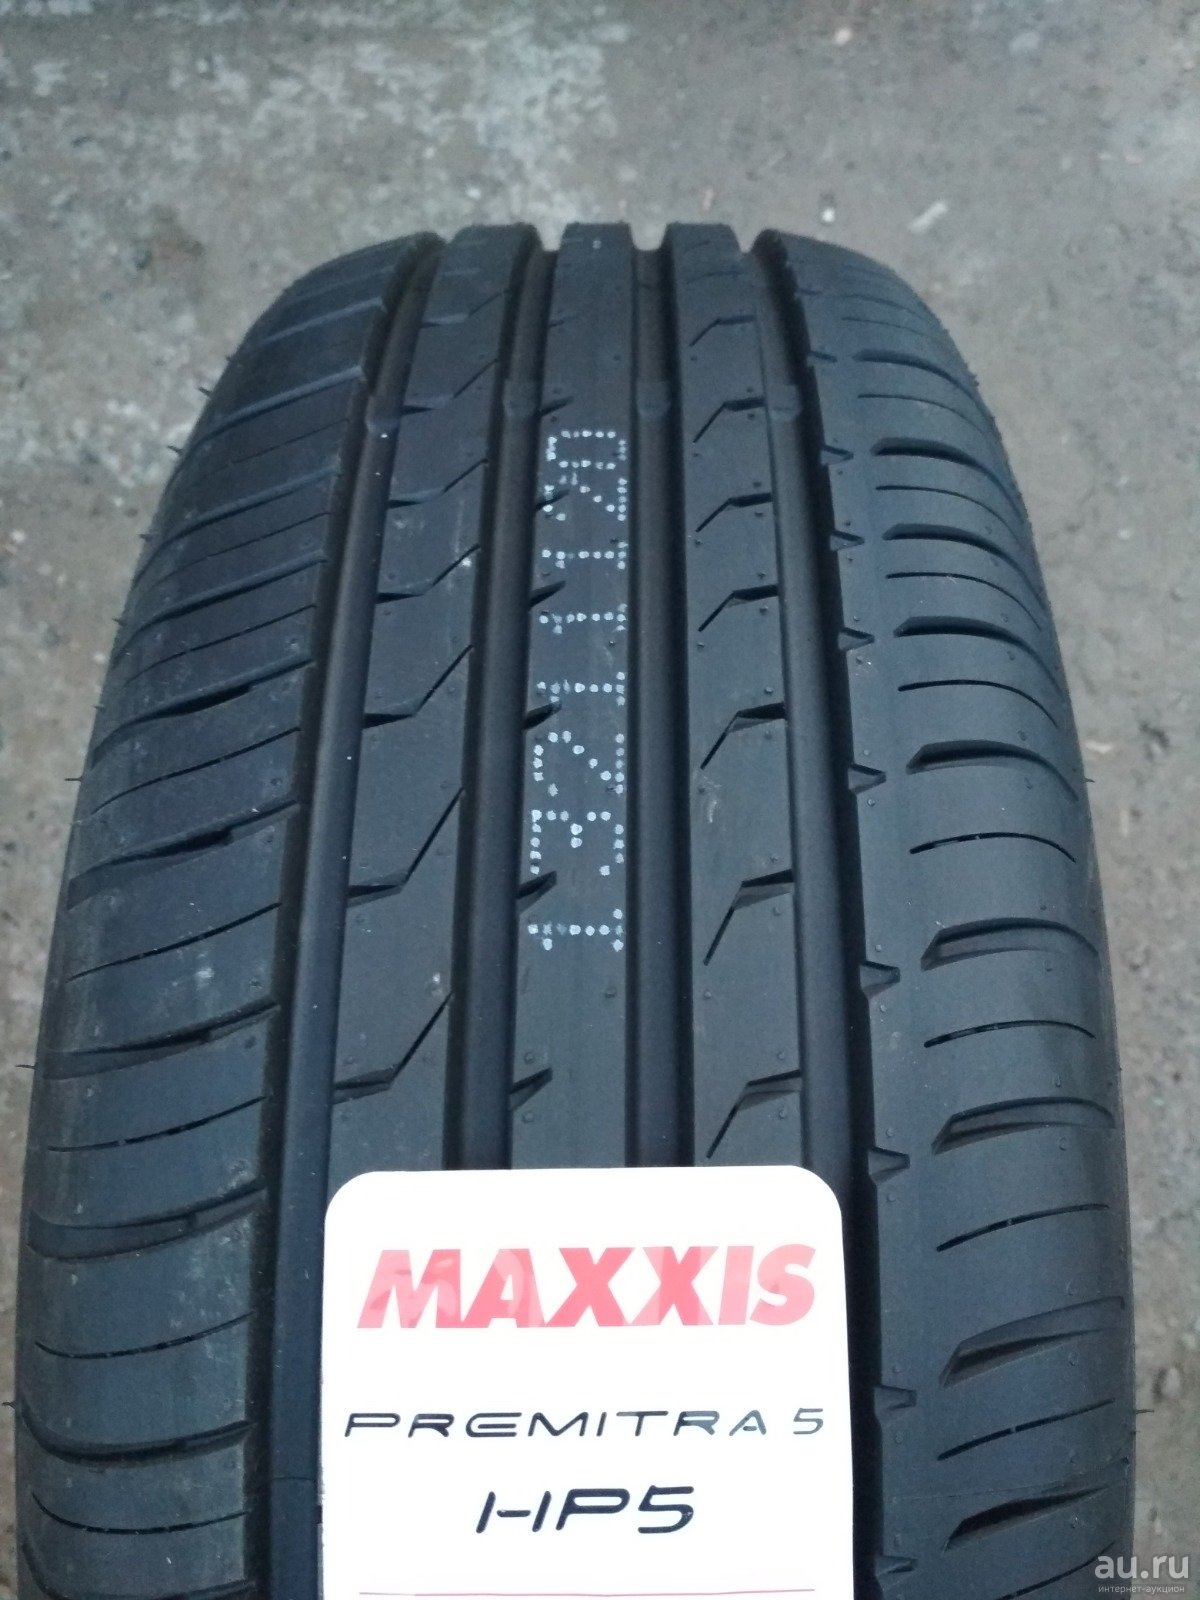 Maxxis premitra hp5 225 60 r17. Maxxis hp5. Maxxis hp5 premitra5. Maxxis 225/60/17 99v Premitra hp5. Maxxis Premitra hp5 235/45 r18 98w.